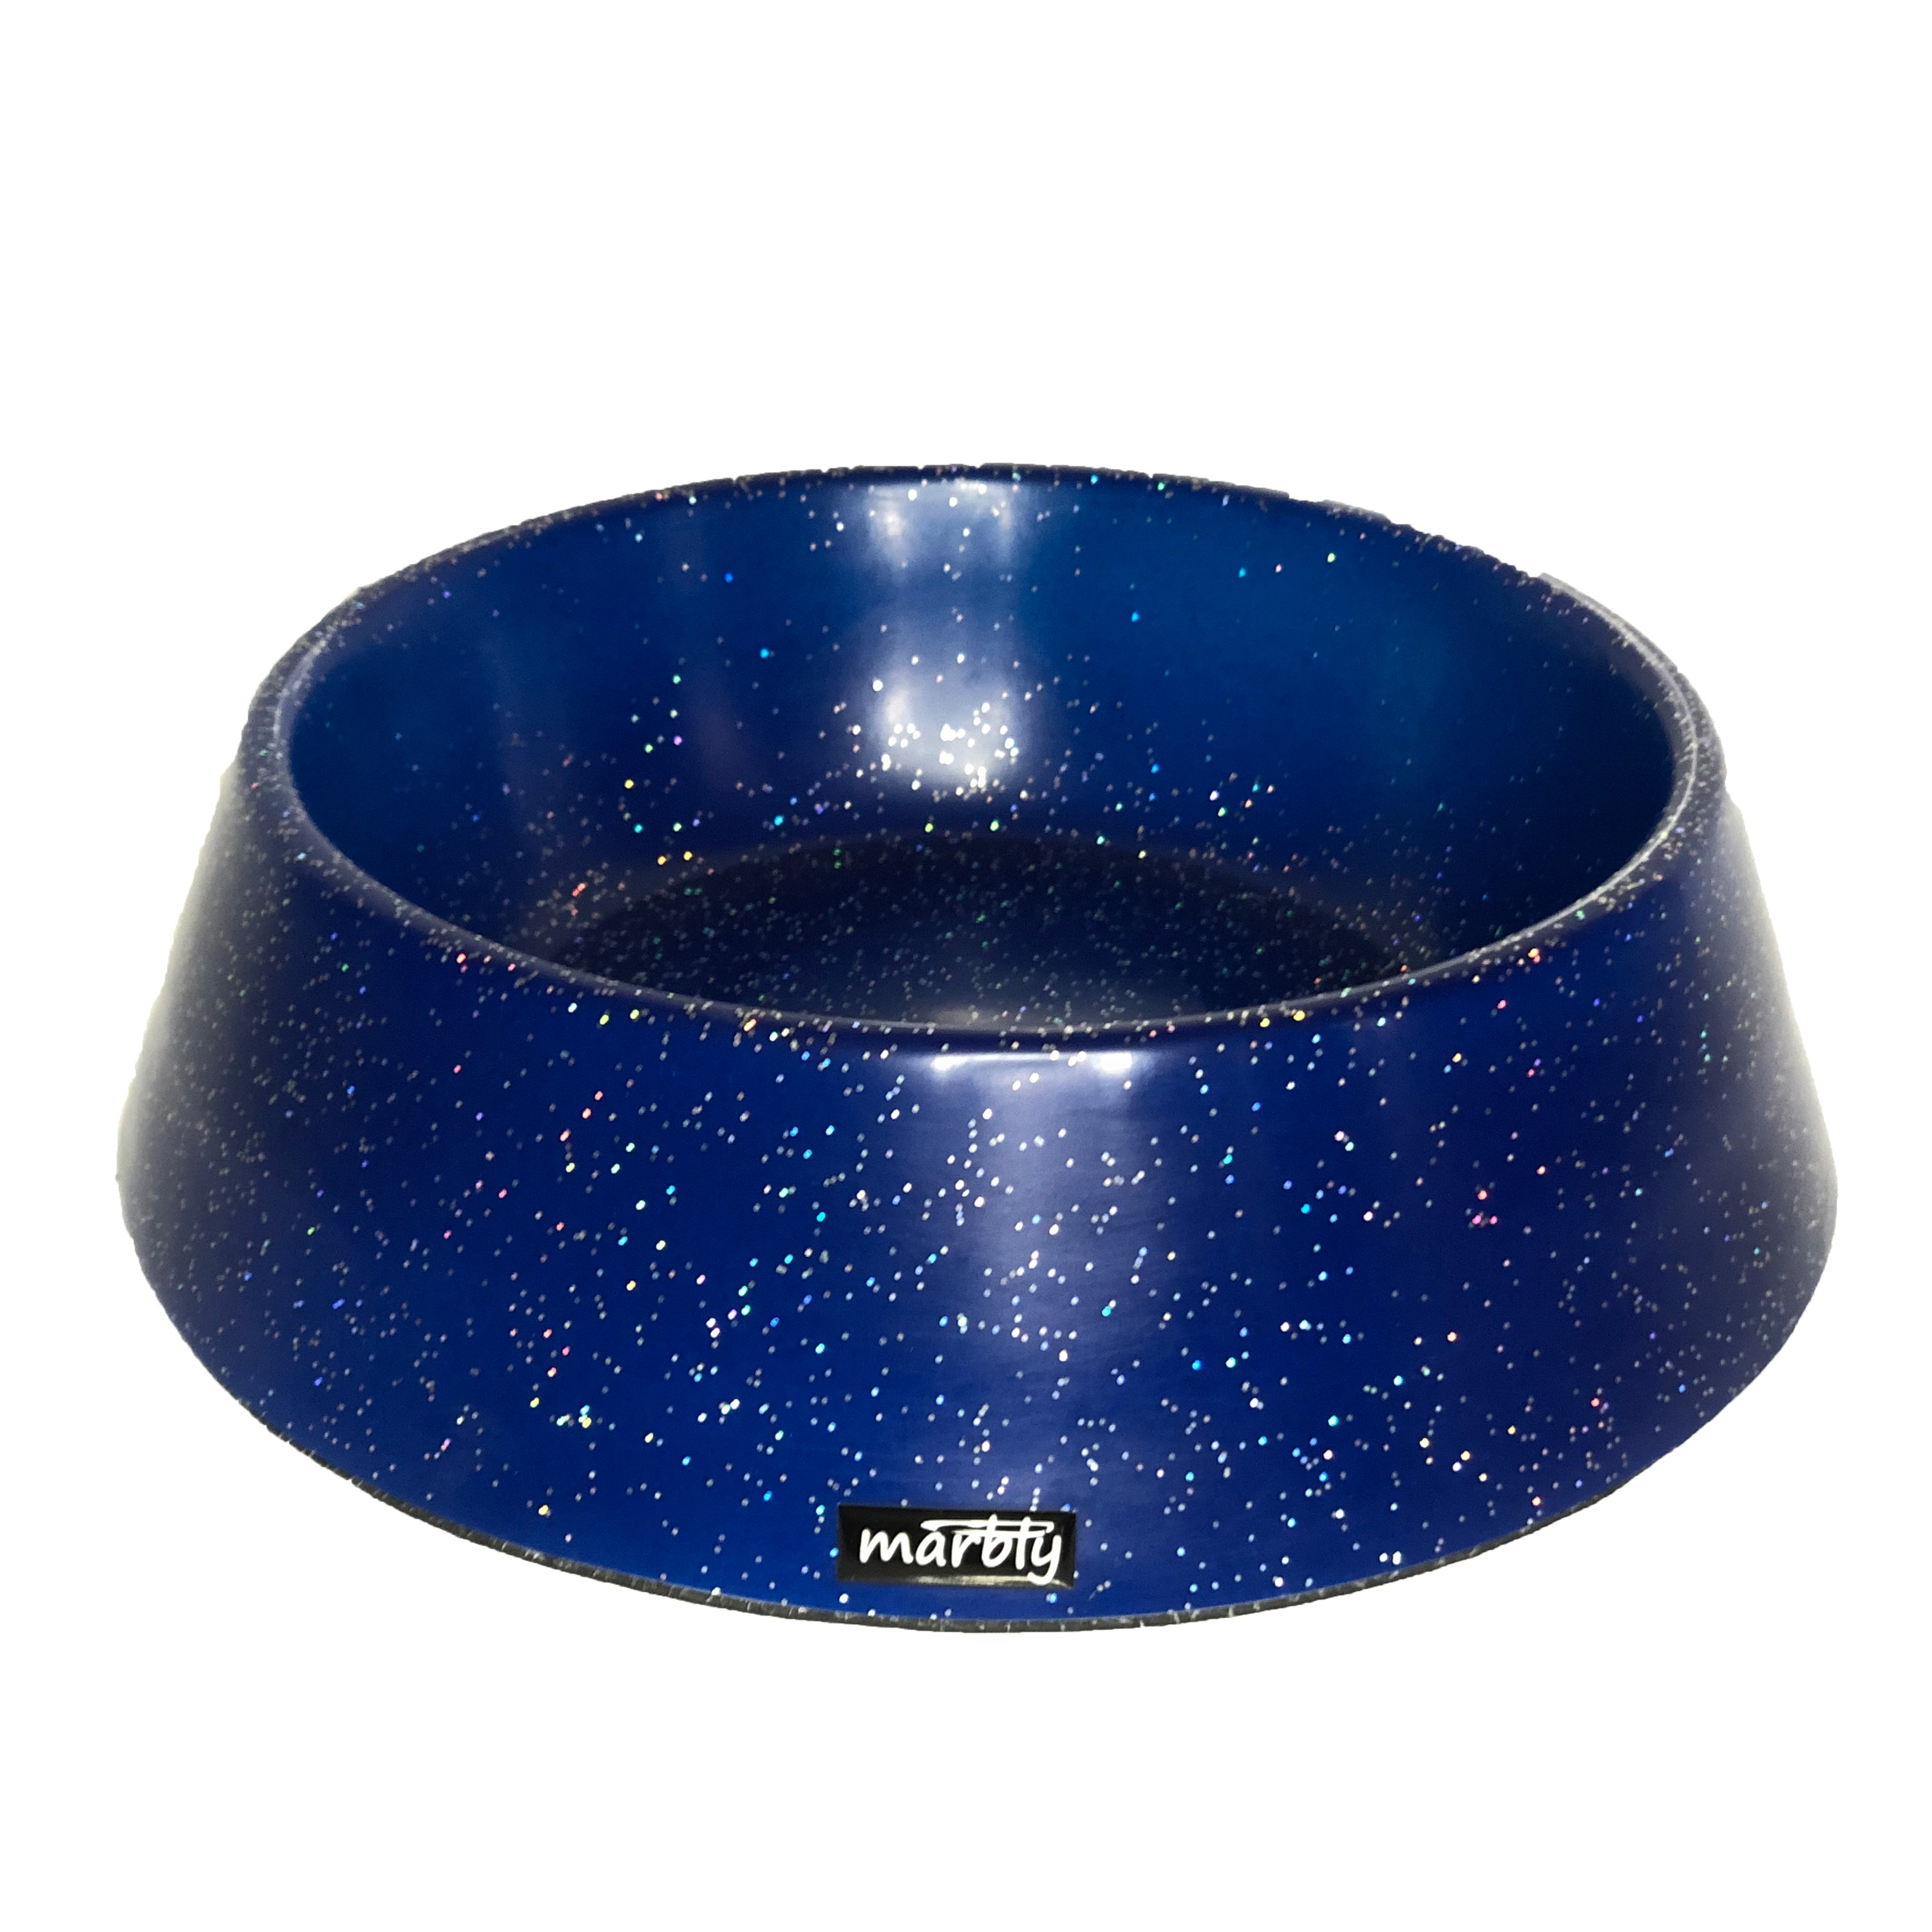 Marbly Mavi Galaxy Mermerit Kedi Köpek Mama Su Kabı 470 ml